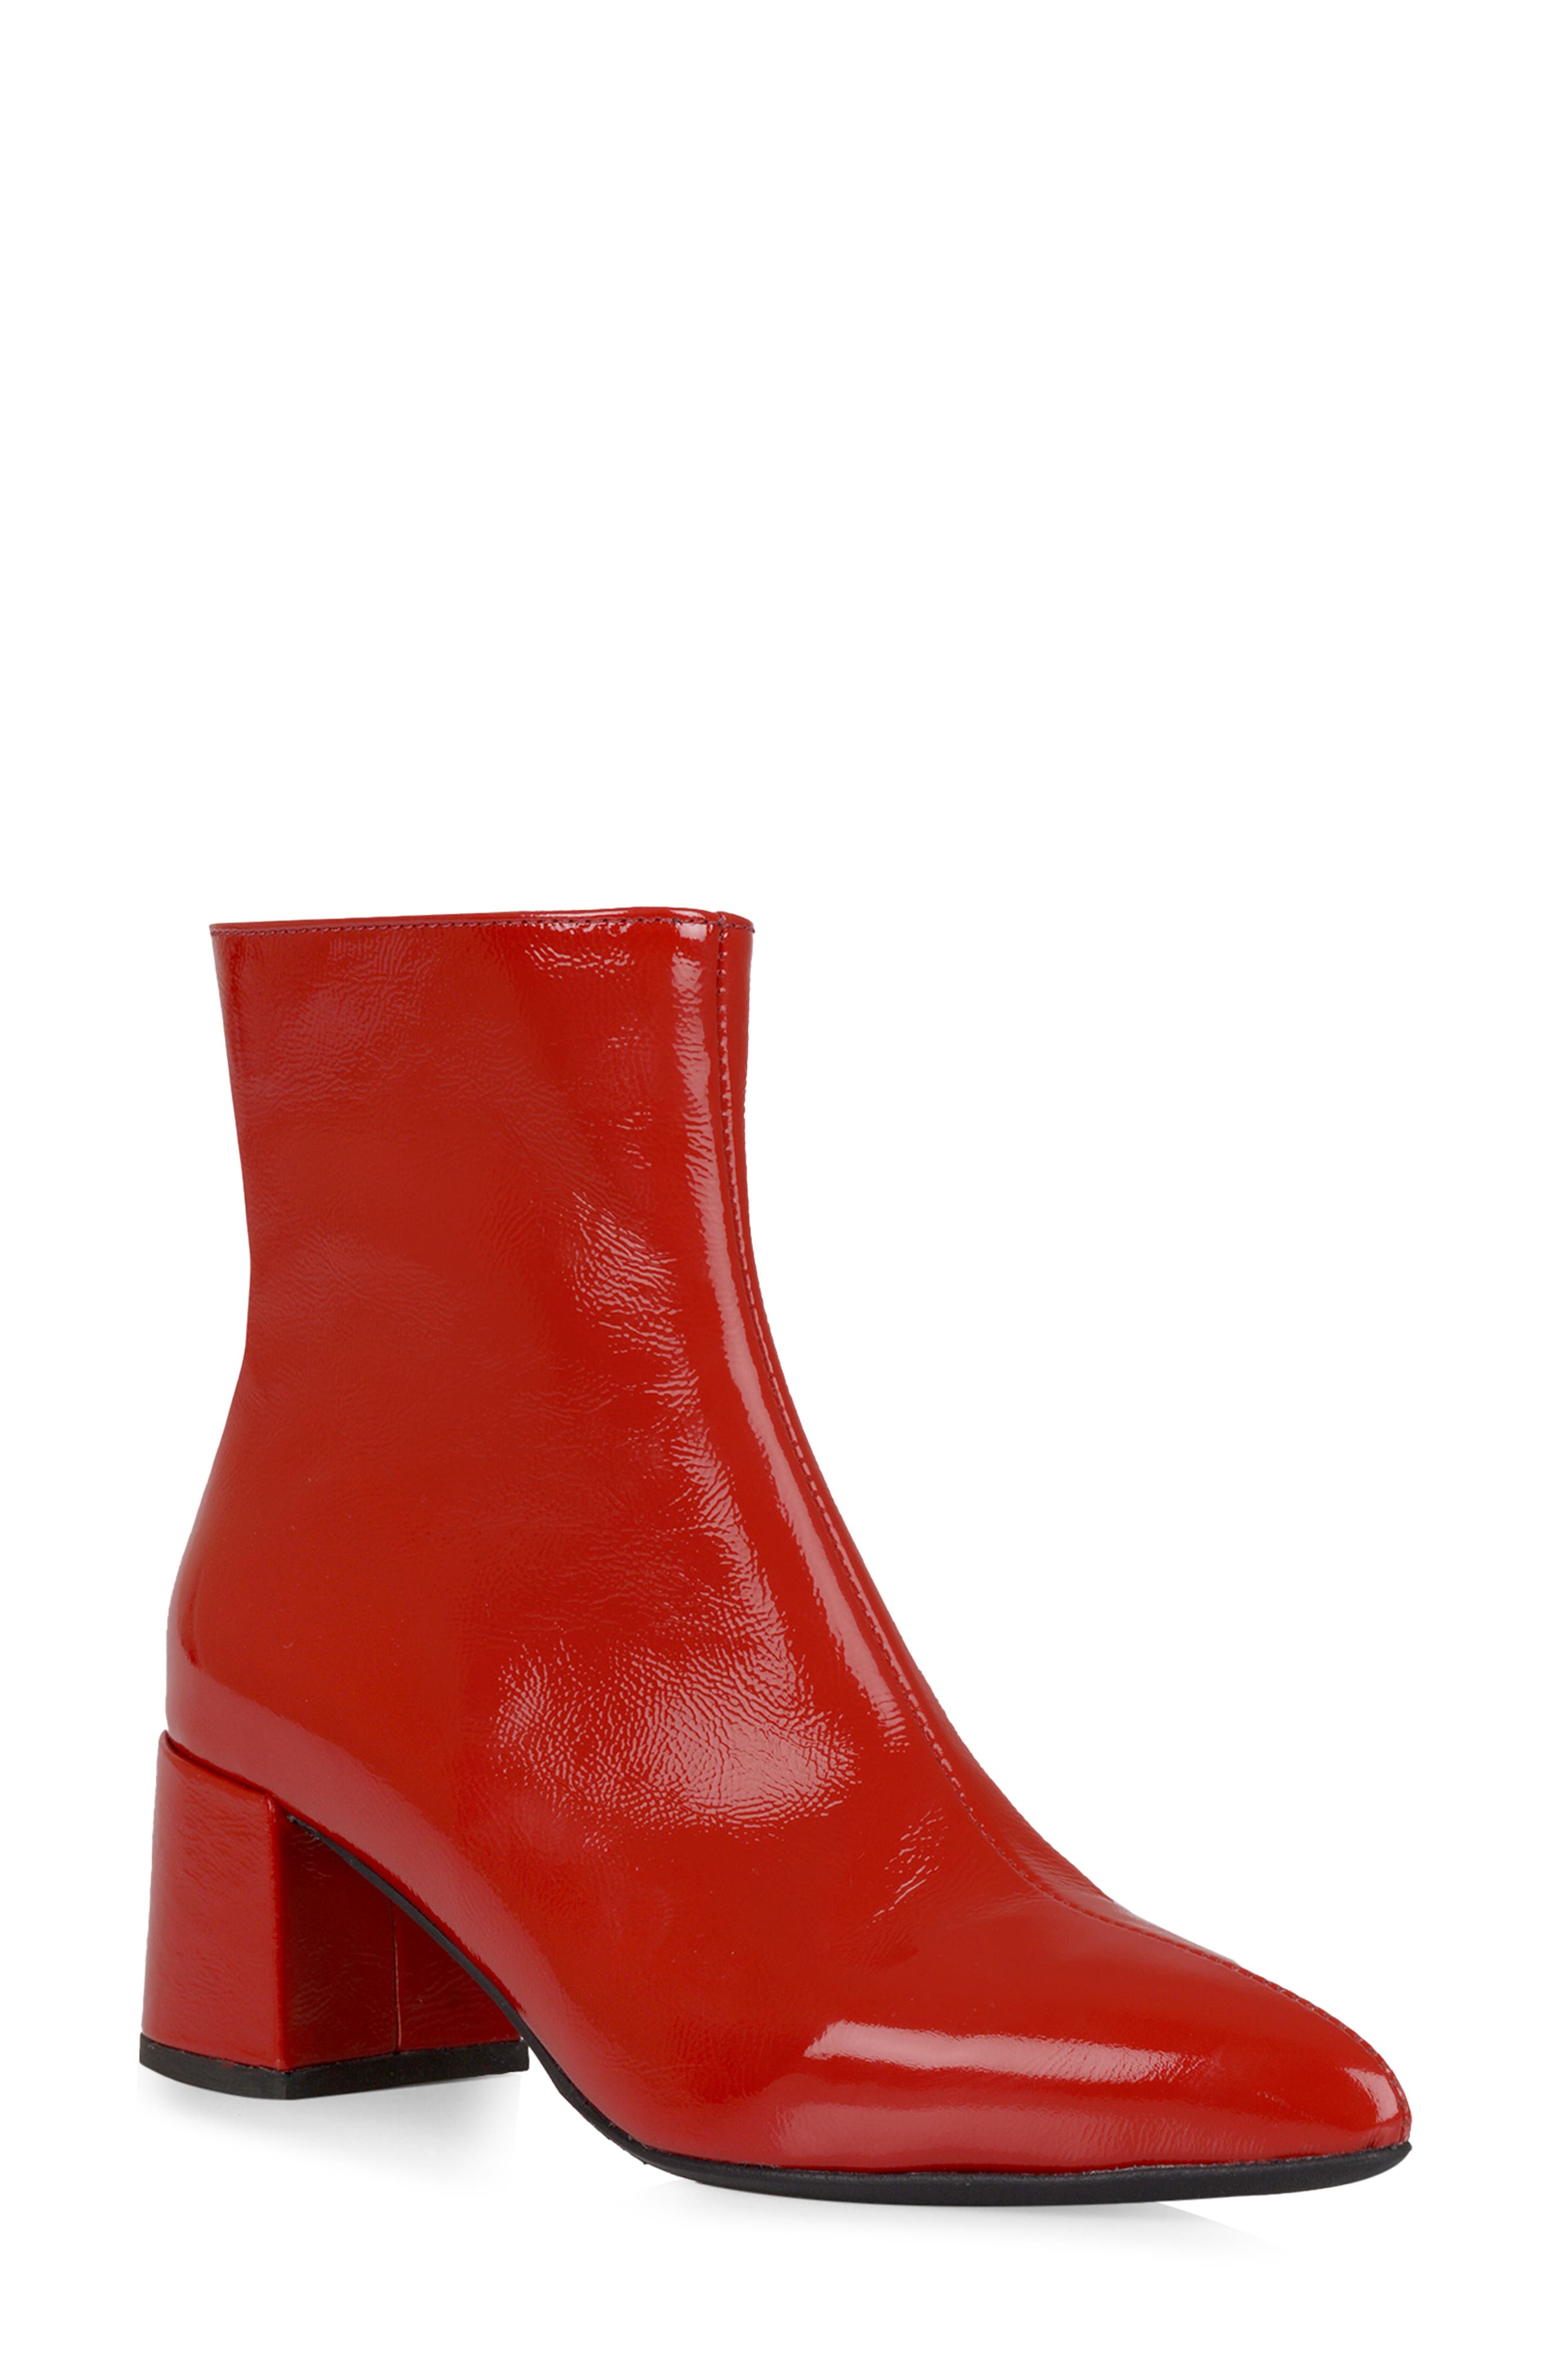 La Canadienne Darling Waterproof Pointed Toe Bootie In Red Crinkle Leather